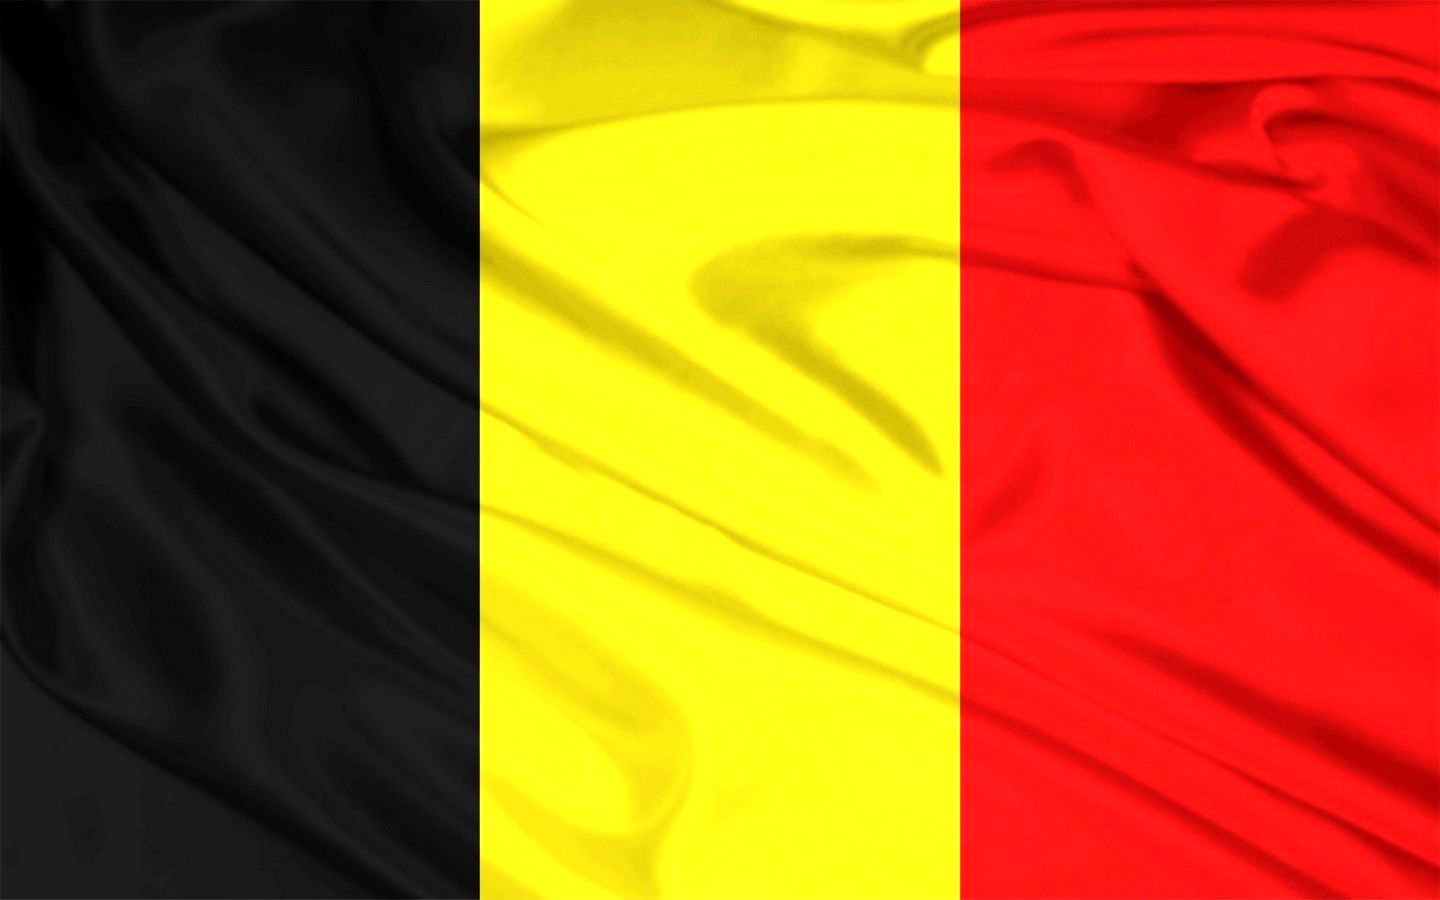 بلژیک سکوتش را شکست / تروریستی اعلام کردن «آنروا» محکوم است